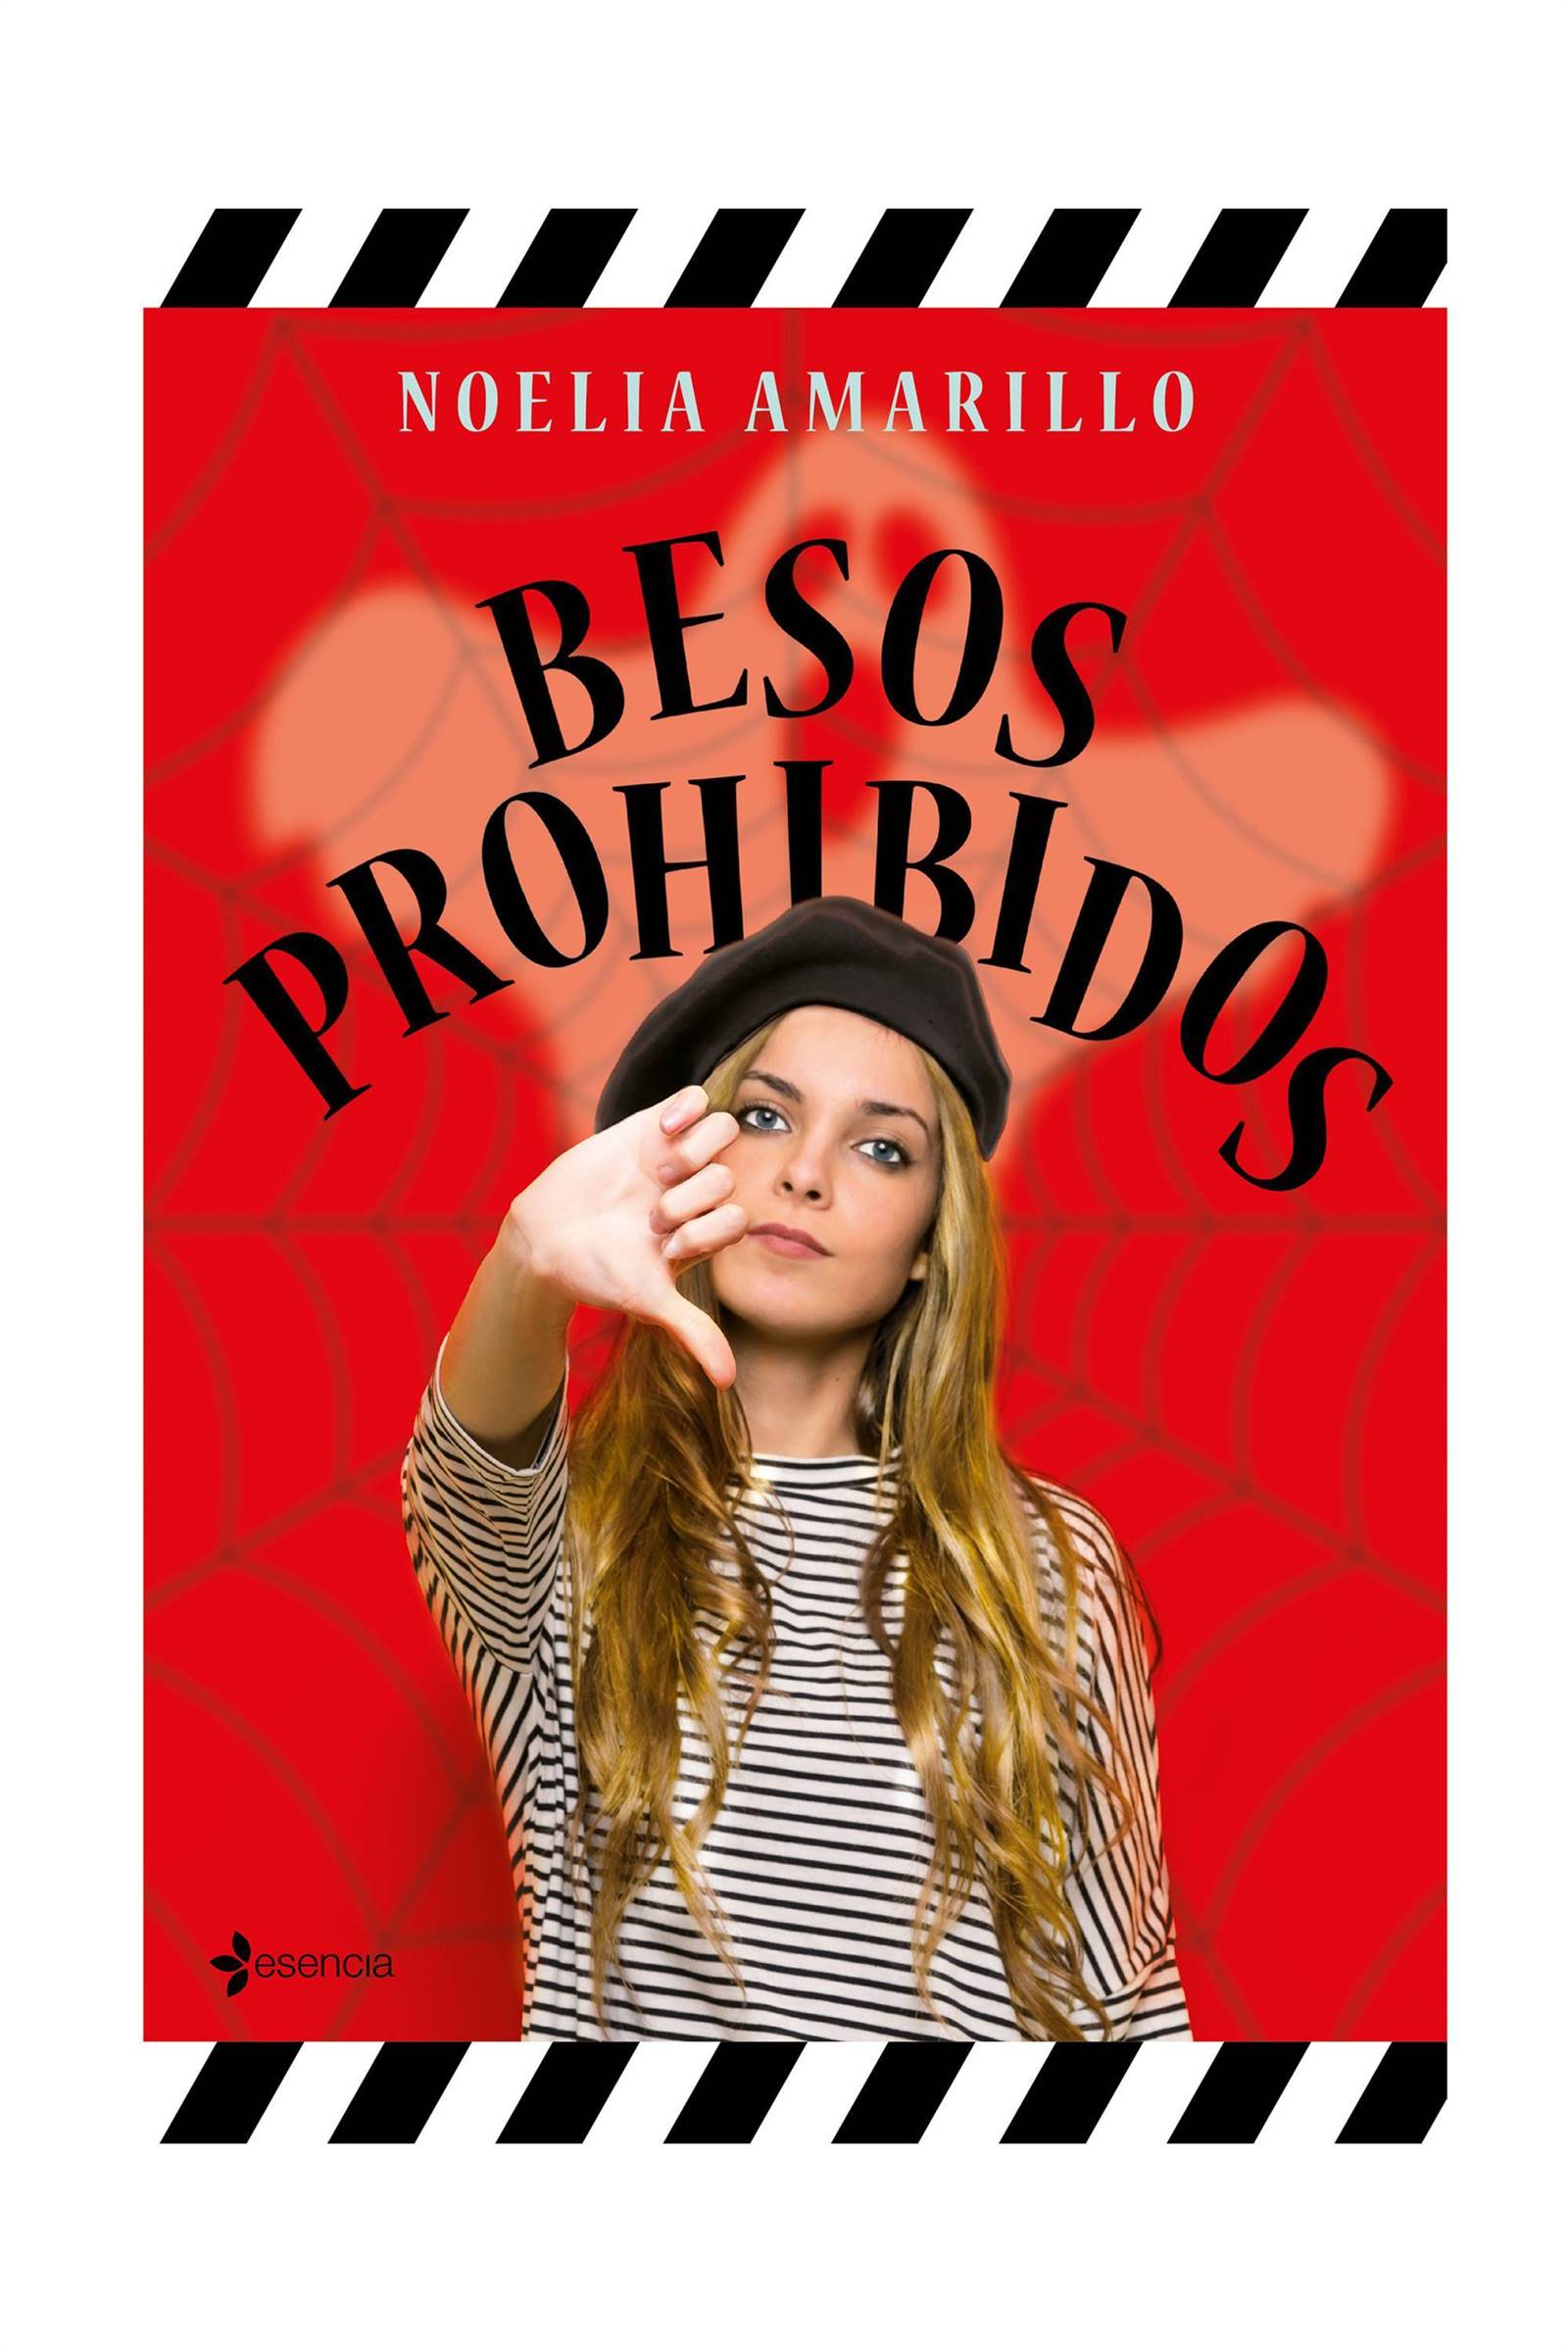 novela romantica y erotica verano 2020 besos prohibidos noelia amarillo